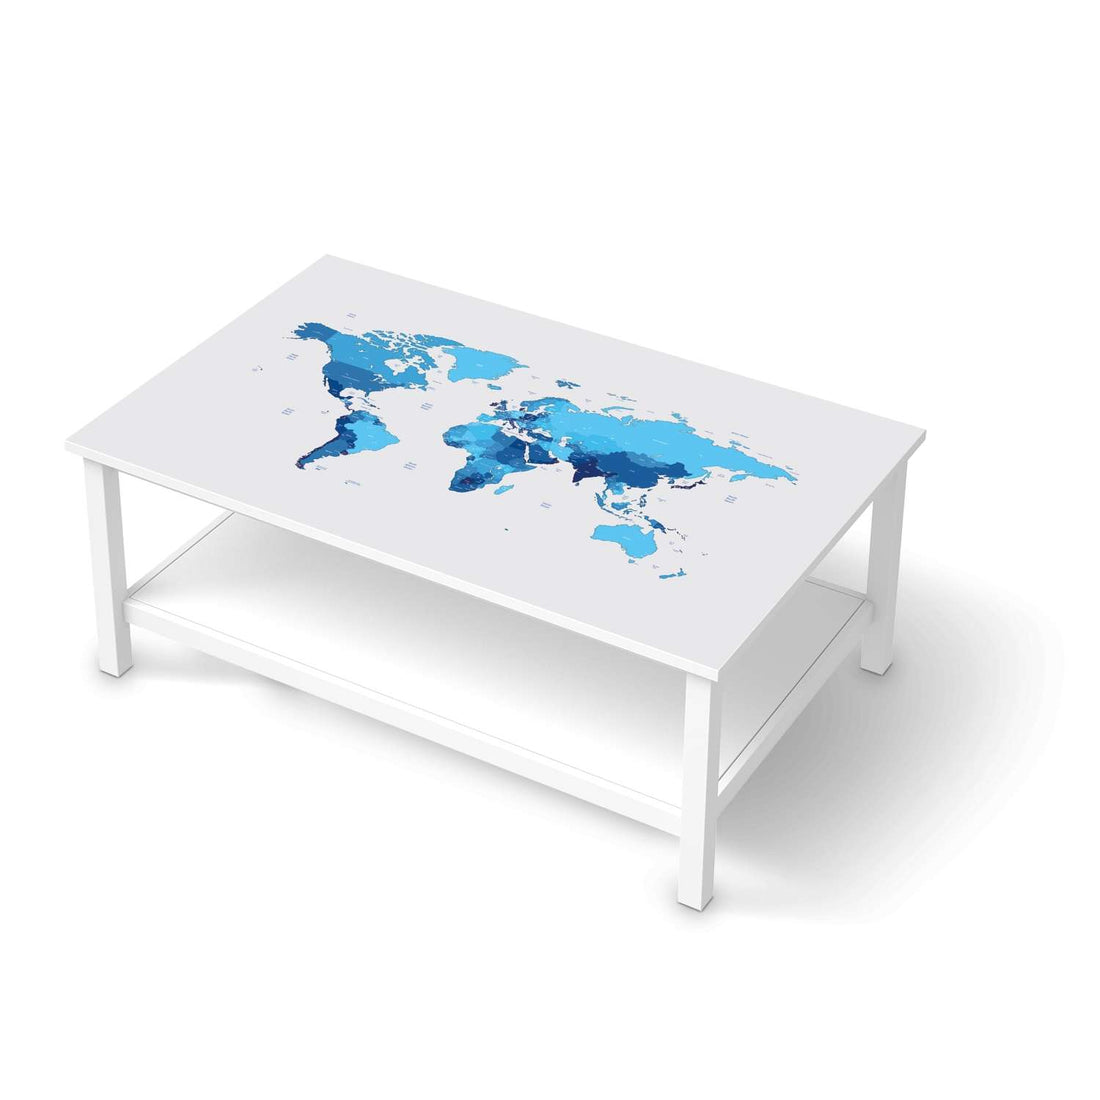 Möbelfolie Politische Weltkarte - IKEA Hemnes Couchtisch 118x75 cm  - weiss